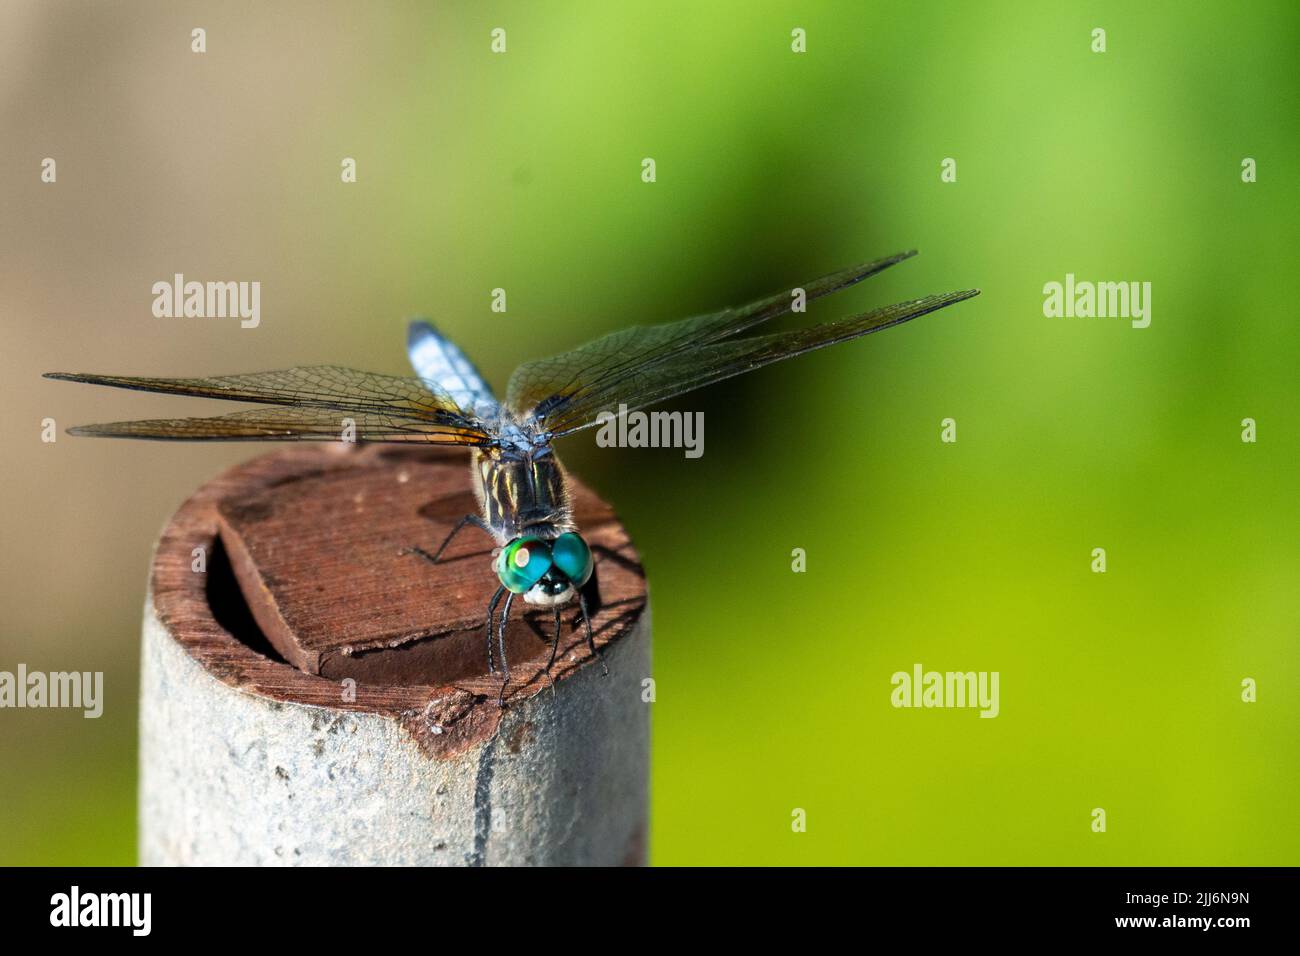 Une libellule dasher bleu mâle repose légèrement sur un tuyau. Vue avant. Banque D'Images